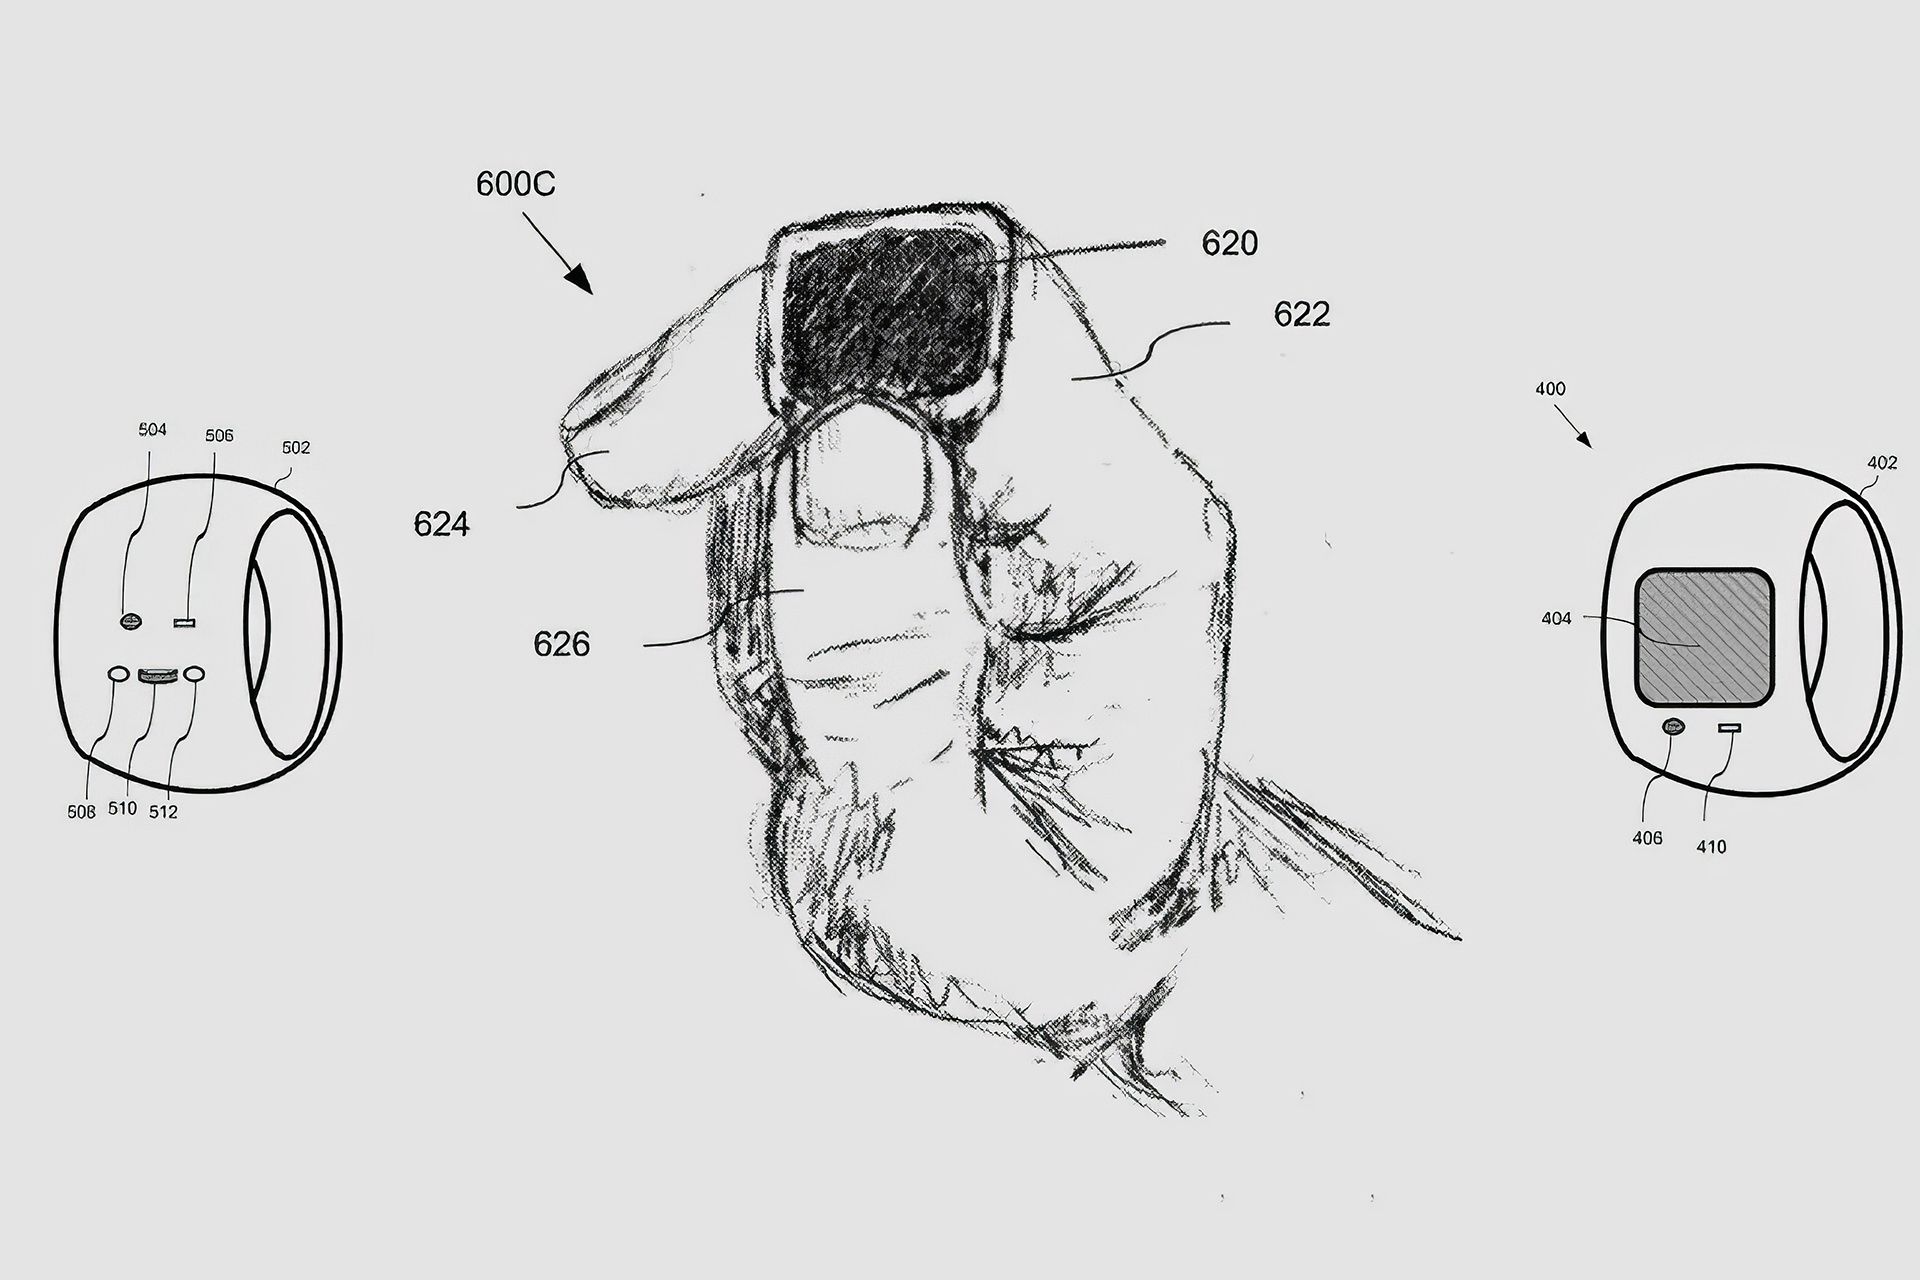 پتنت حلقه ی هوشمند اپل که در آن  یک شخص درحال لمس حلقه است